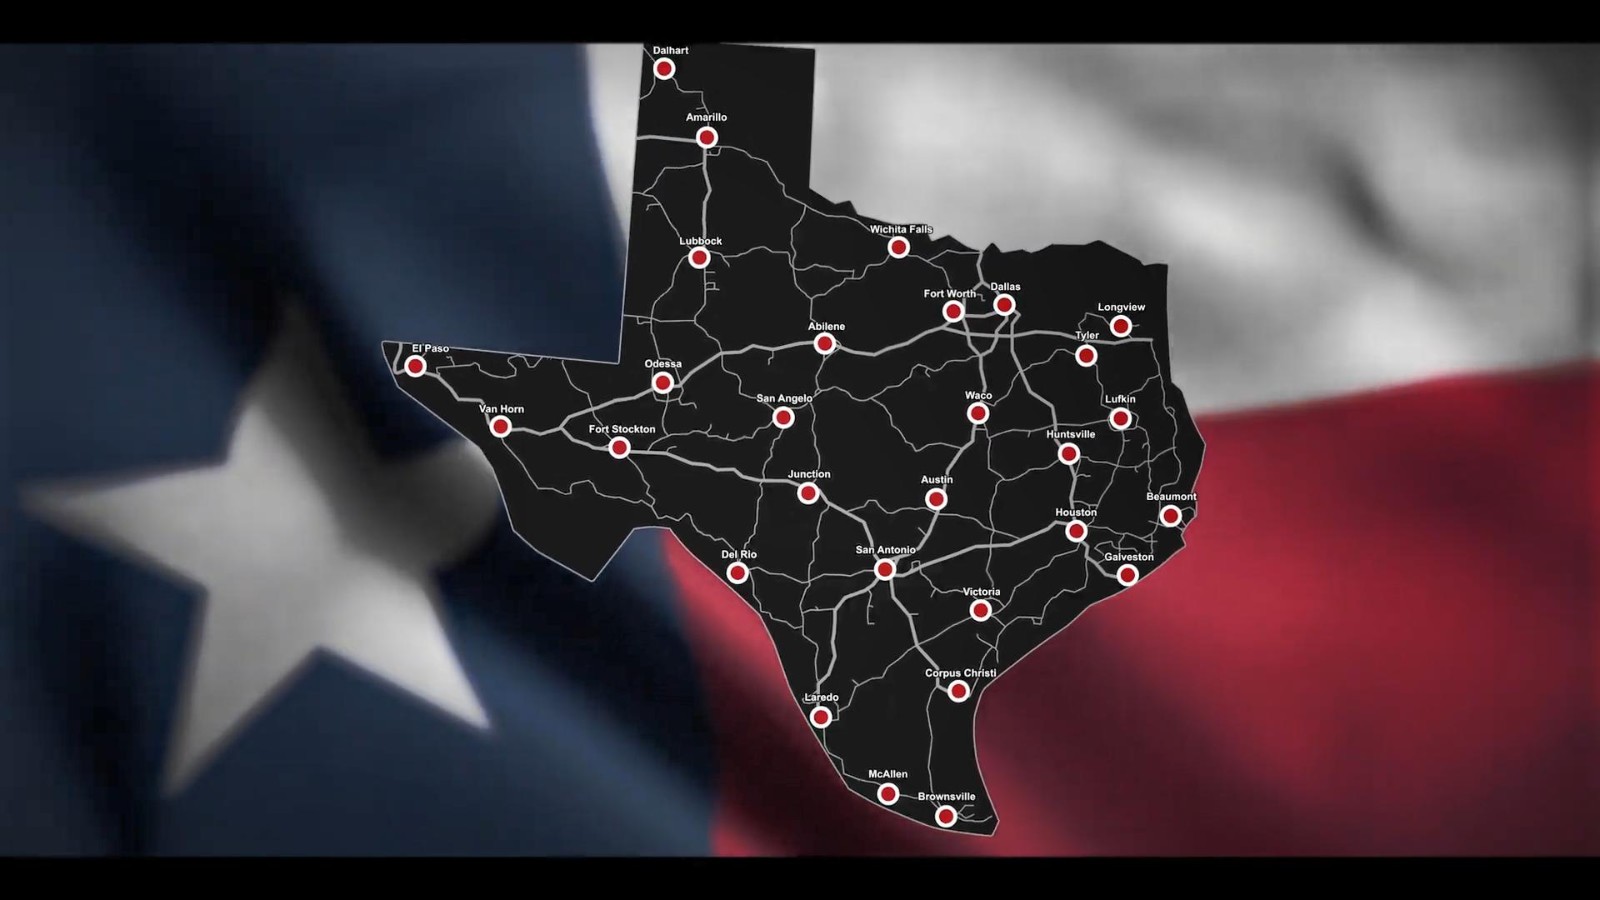 《美国卡车模拟》“得克萨斯州”DLC发售 美卡最大地图DLC